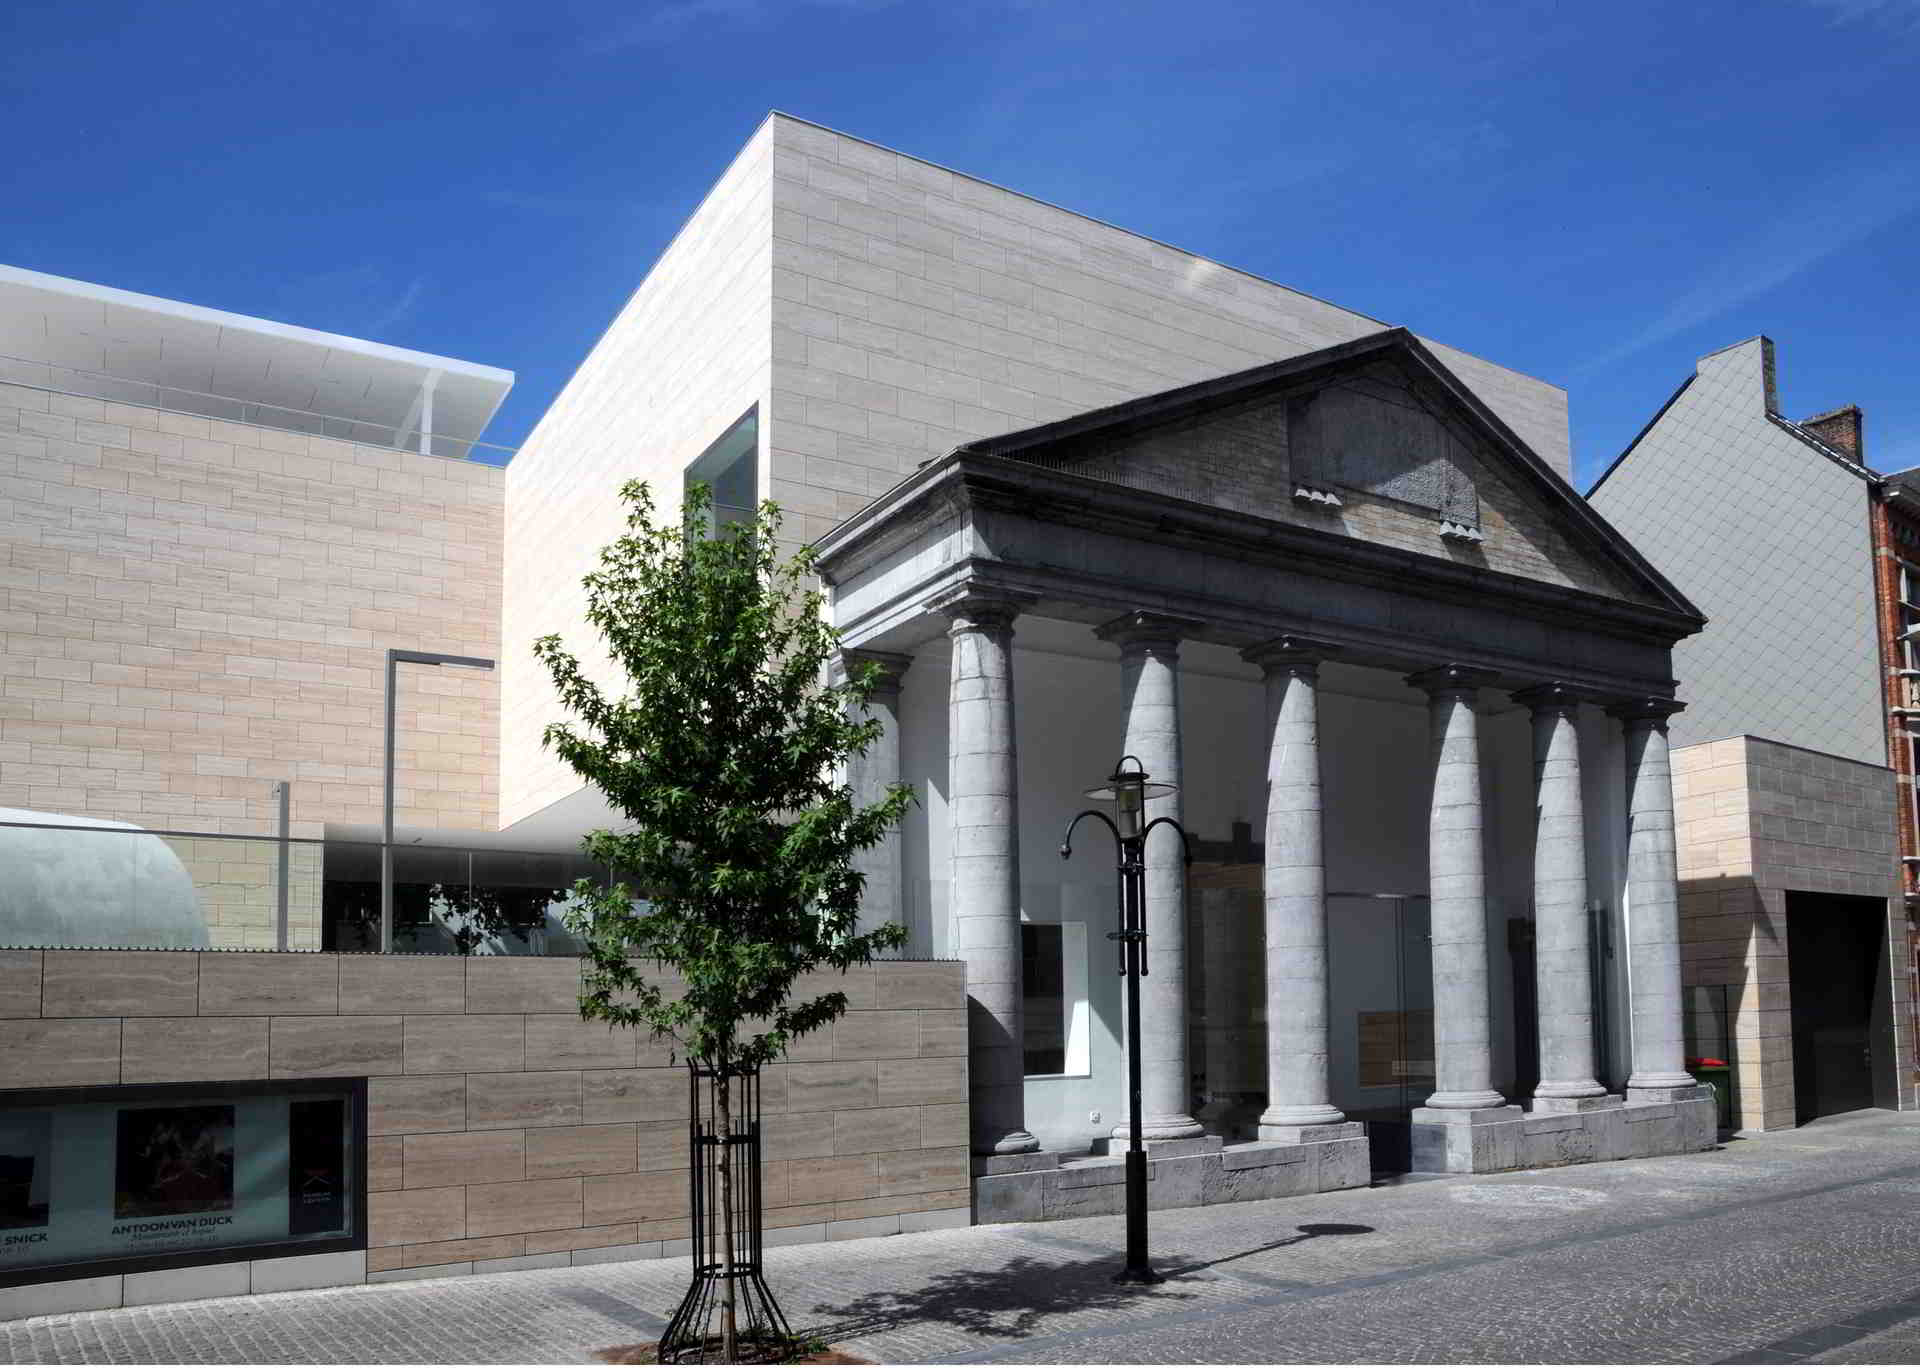 The Leuven Museum